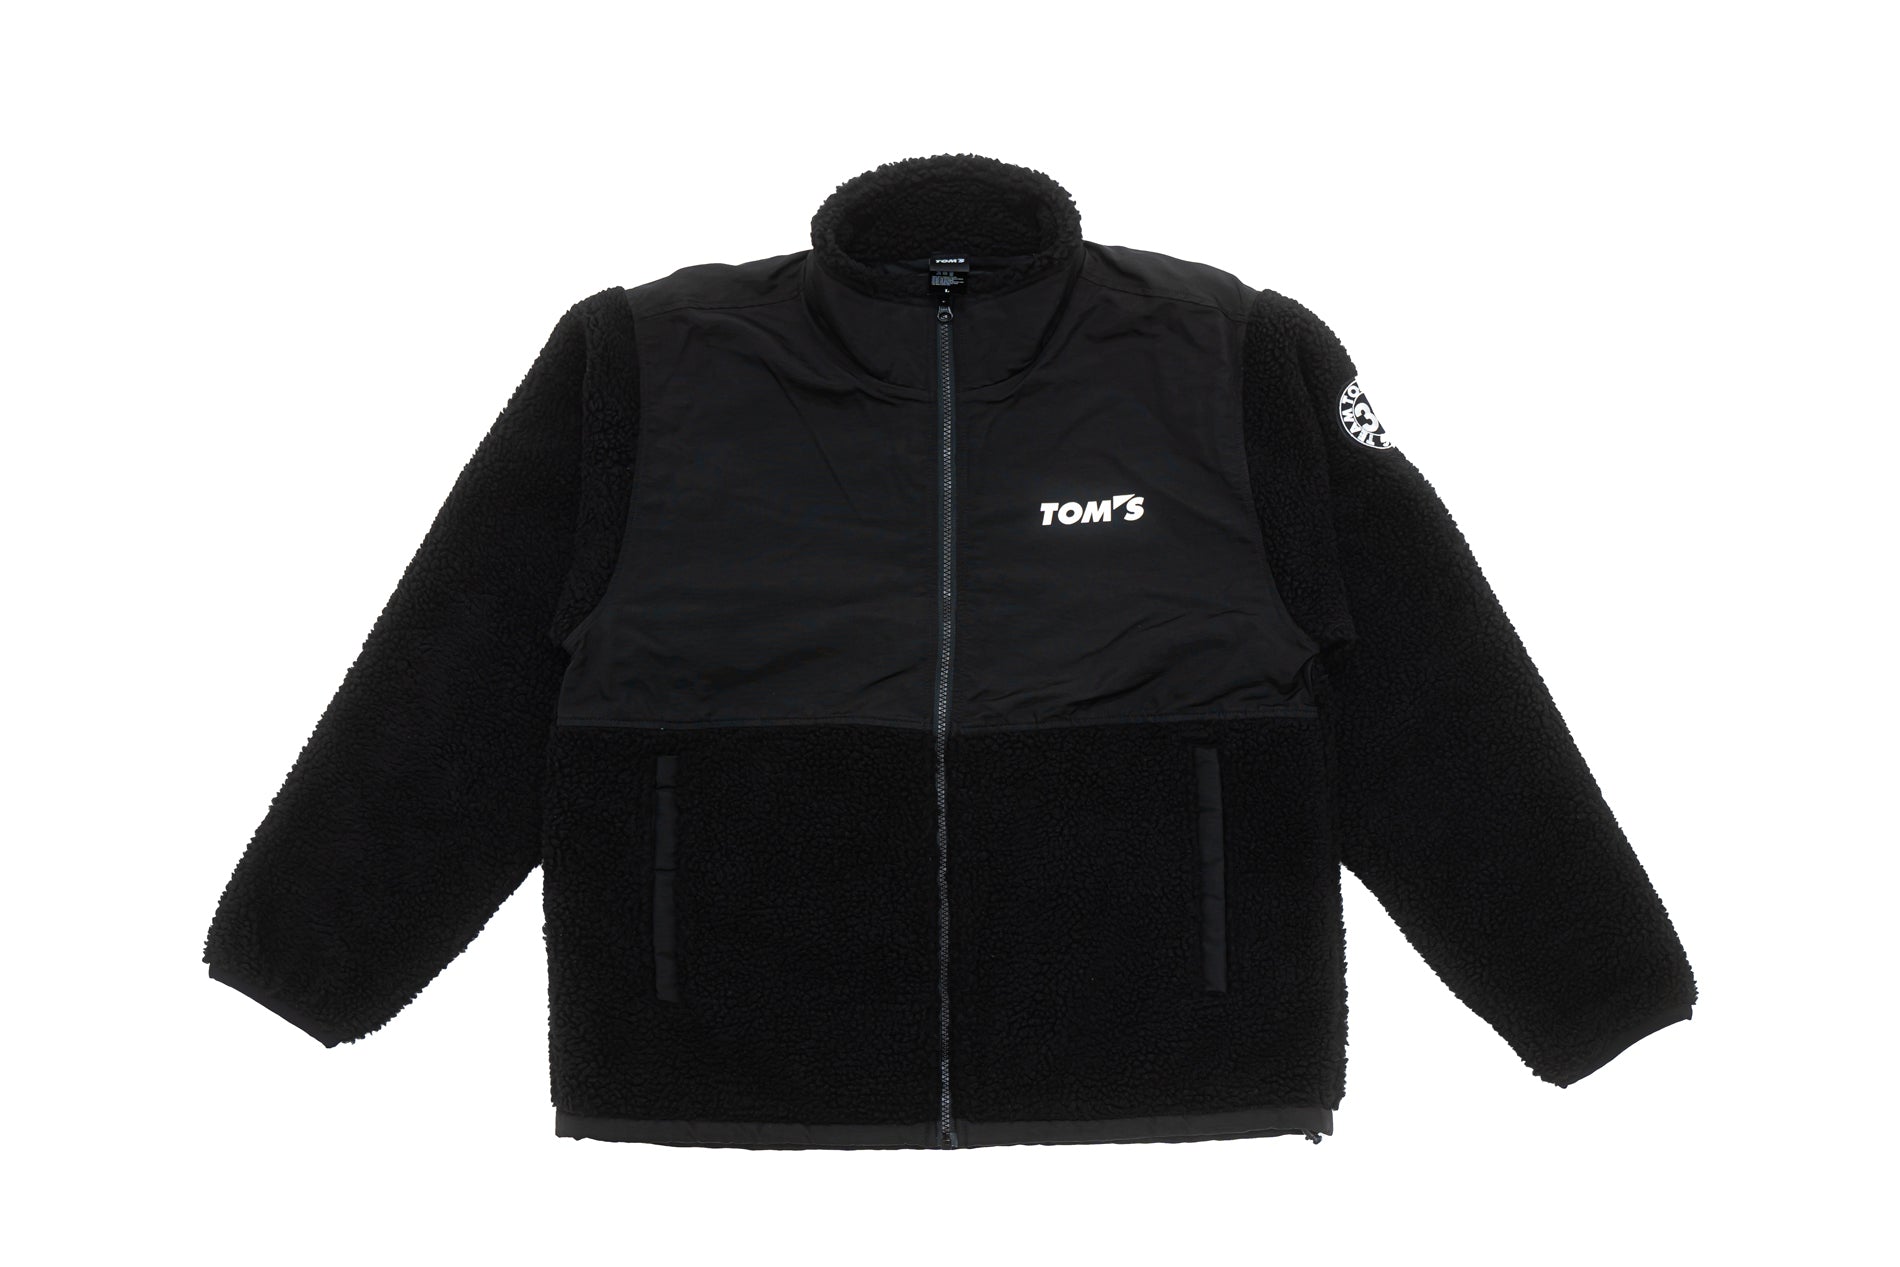 TOM'S Racing - 49th Anniversary Fleece Zip Jacket - Black